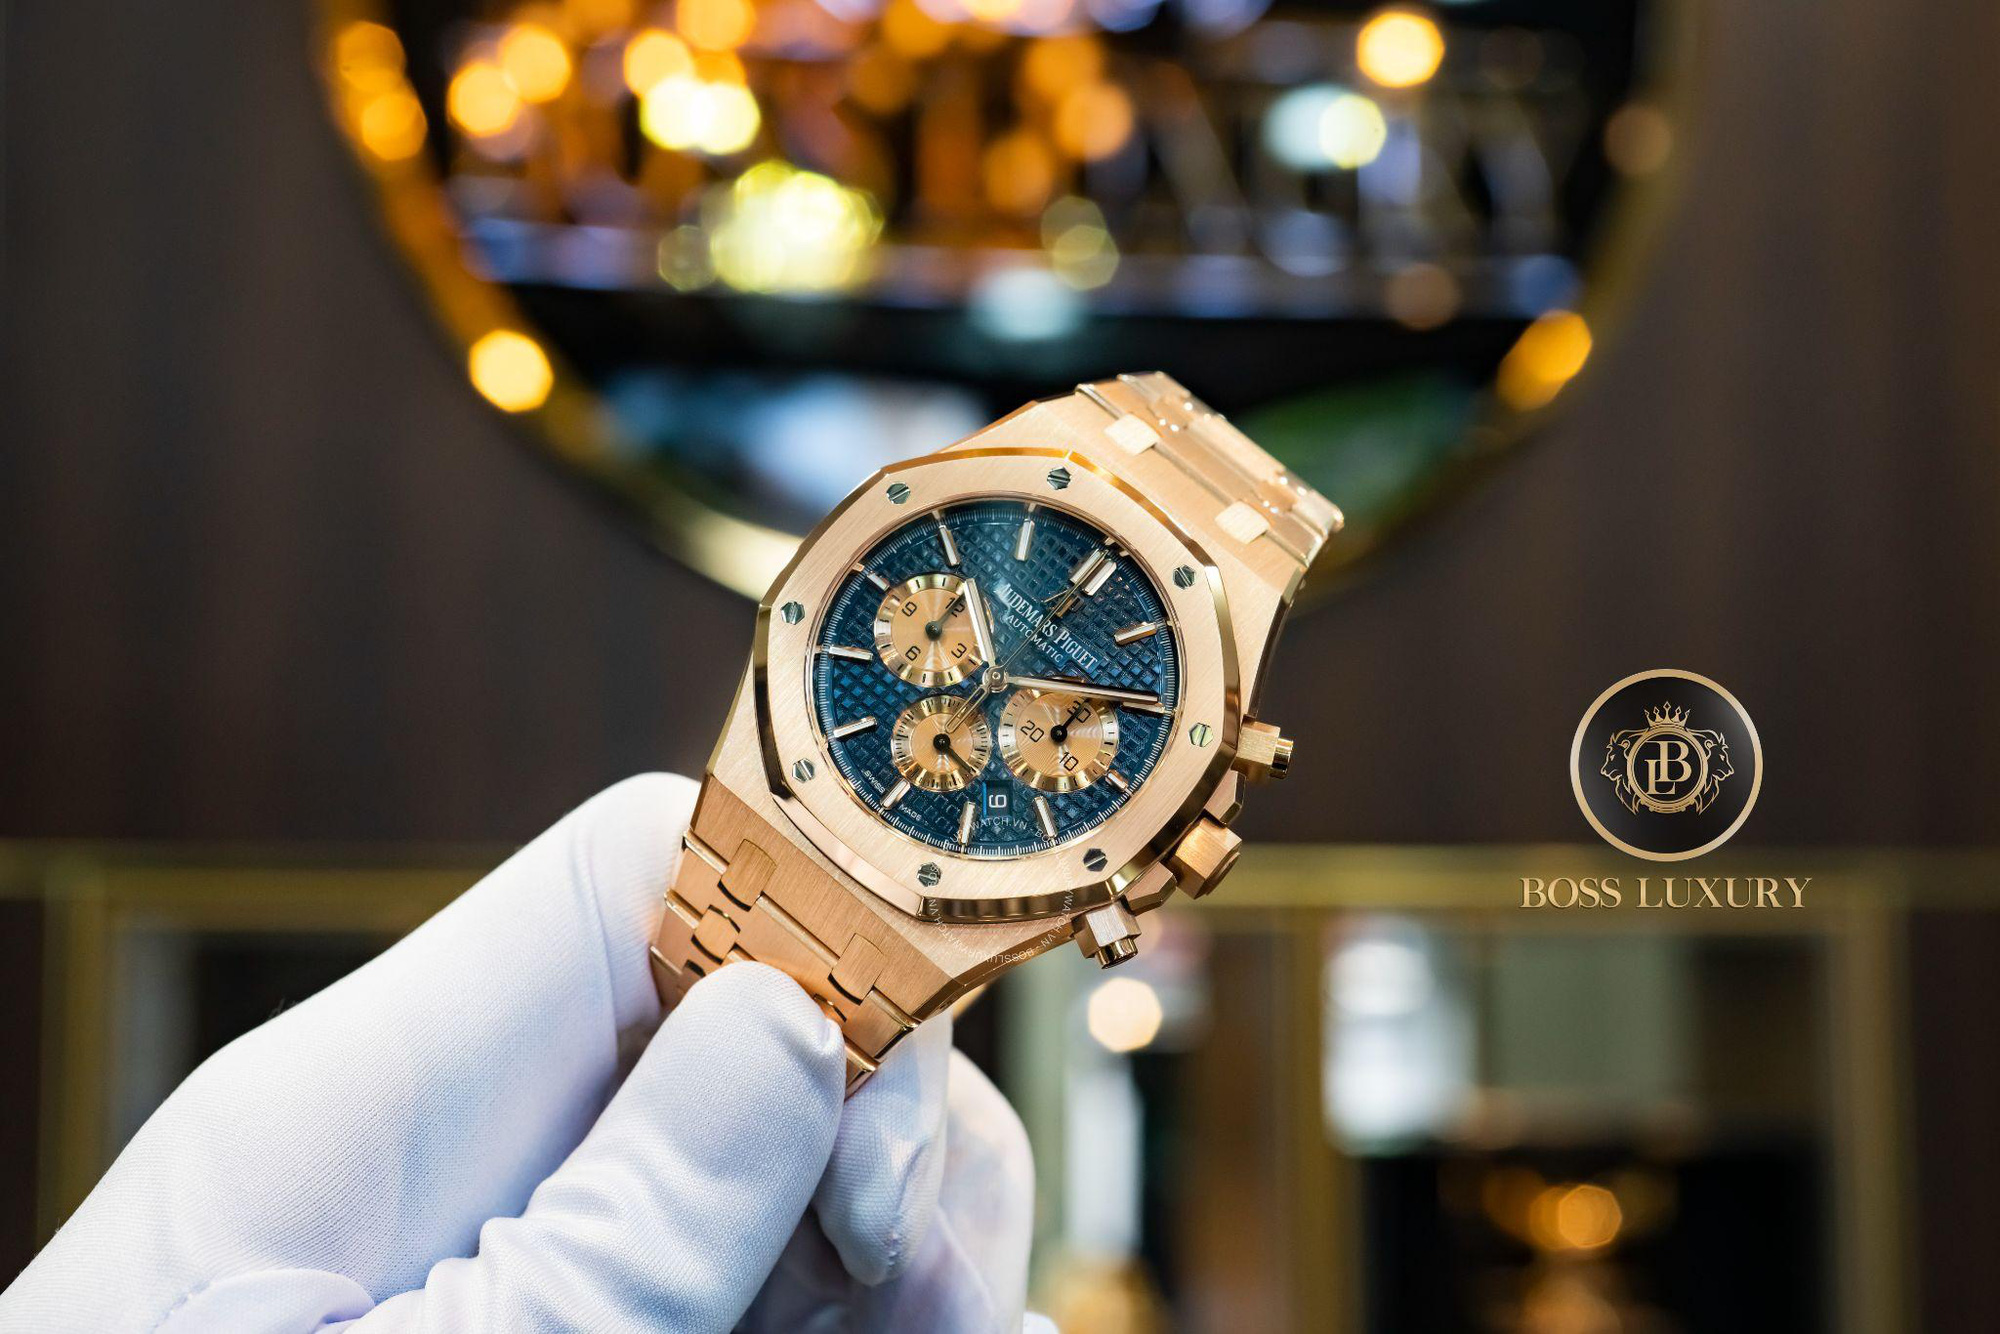 Boss Luxury tư vấn 5 mẫu đồng hồ mặt số màu xanh dành cho quý ông - Ảnh 3.